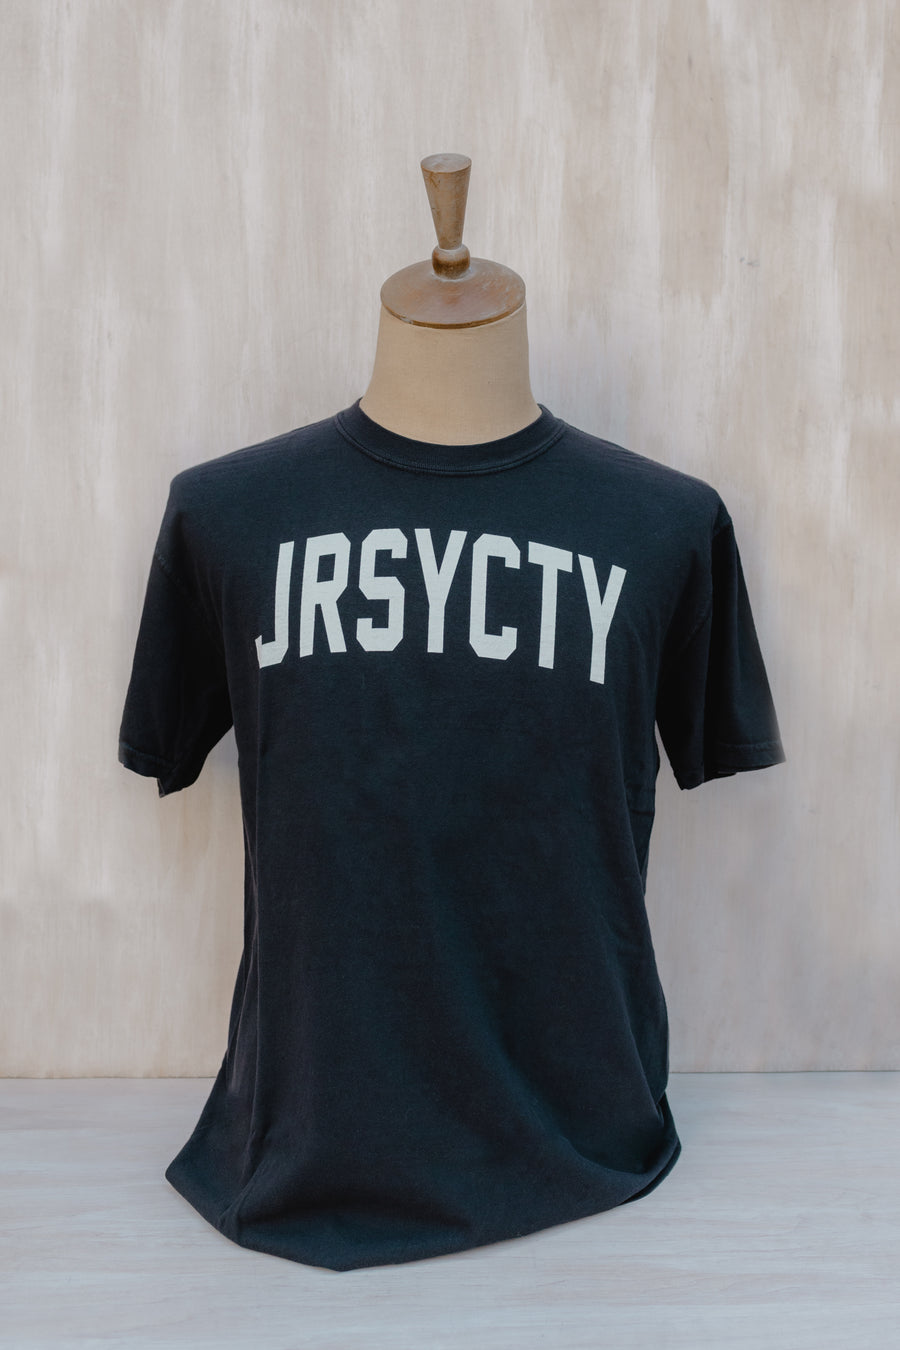 Shirt: JRSYCTY